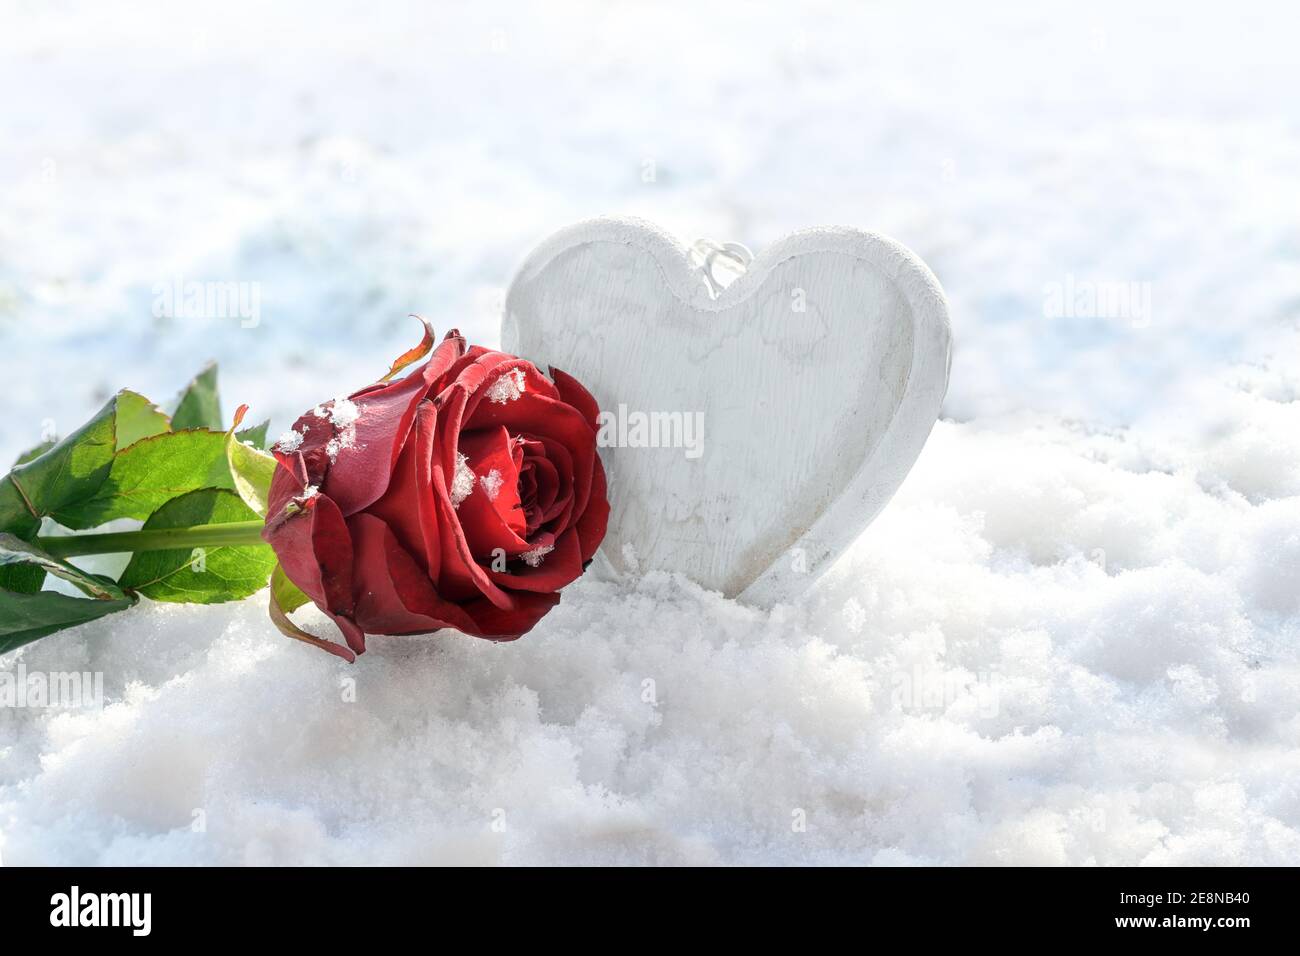 Rosa rossa e un cuore di legno dipinto di bianco nella neve, concetto di amore per le vacanze stagionali come giorno di valentine, spazio di copia, fuoco selezionato, narro Foto Stock